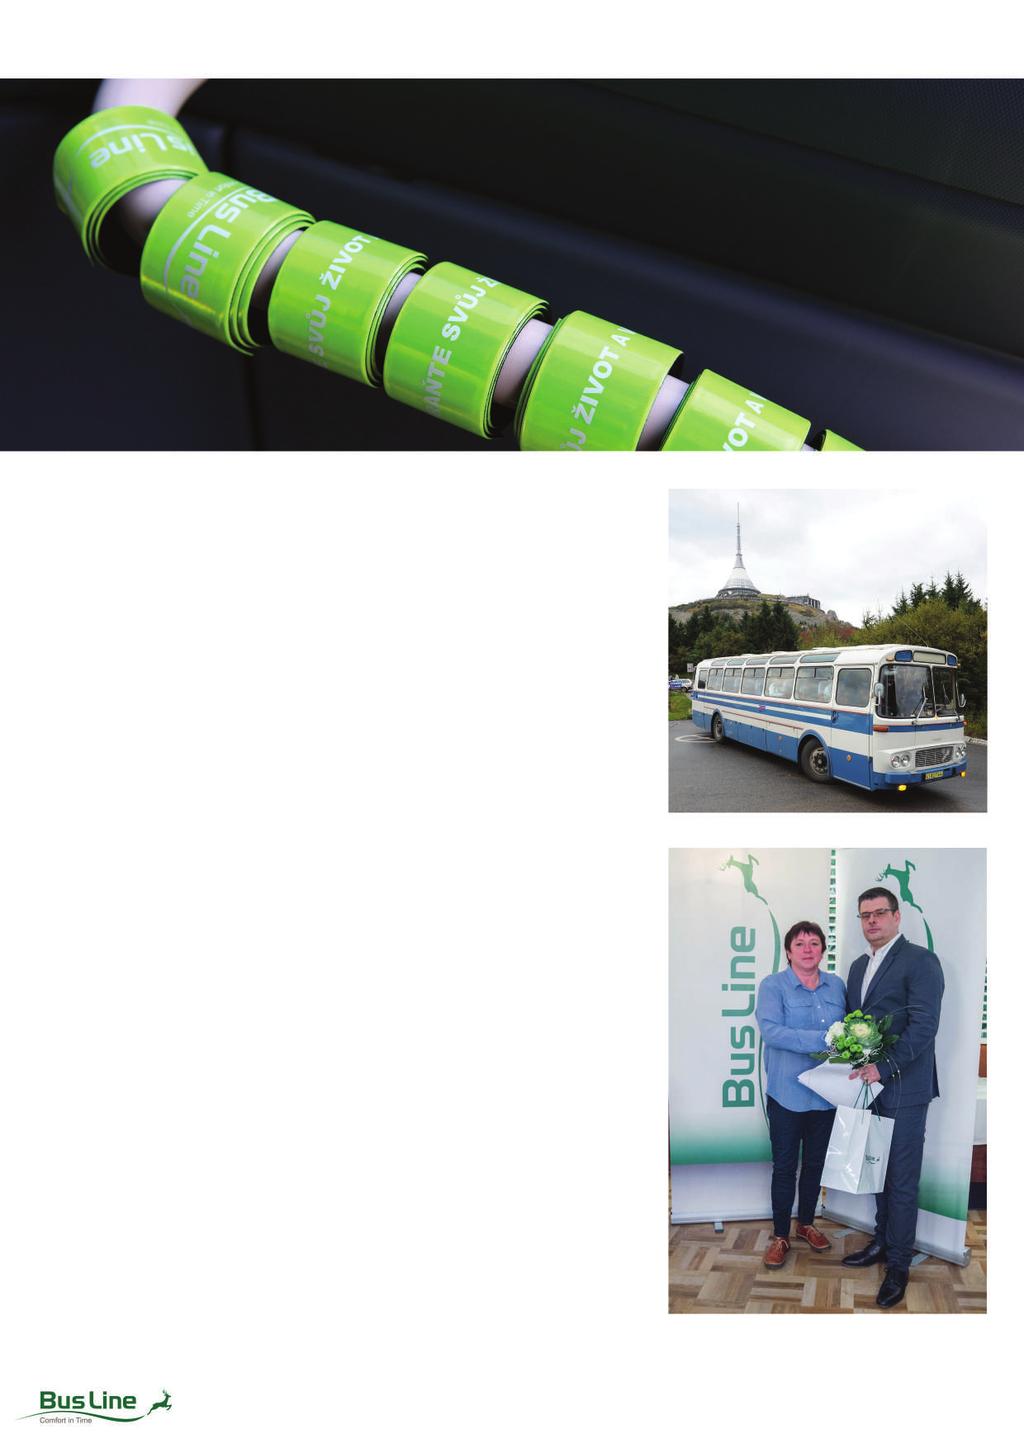 AKCE2017 OSLAVYJEŠTĚDUVLIBERCI -Veřejnostposoudilavýkonretroautobusů,vekterýchvystoupala ažtéměřksamotnémuvysílačiještěd. 2.